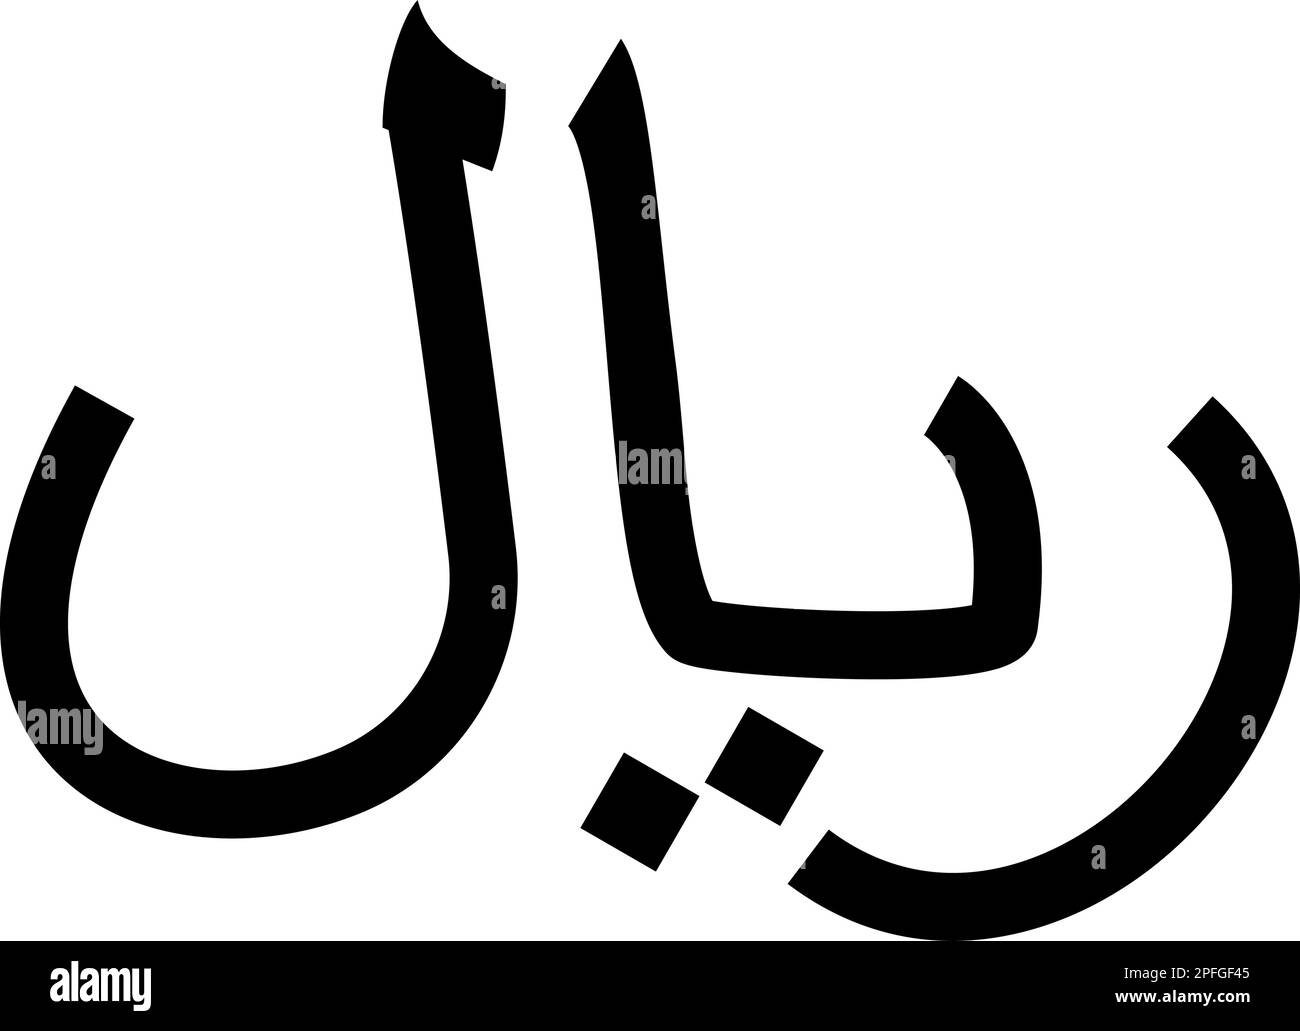 Iranisches Währungssymbol iranisches Rial-Symbol Schwarze Farbe Vektor-Illustration flacher Stil einfach Stock Vektor